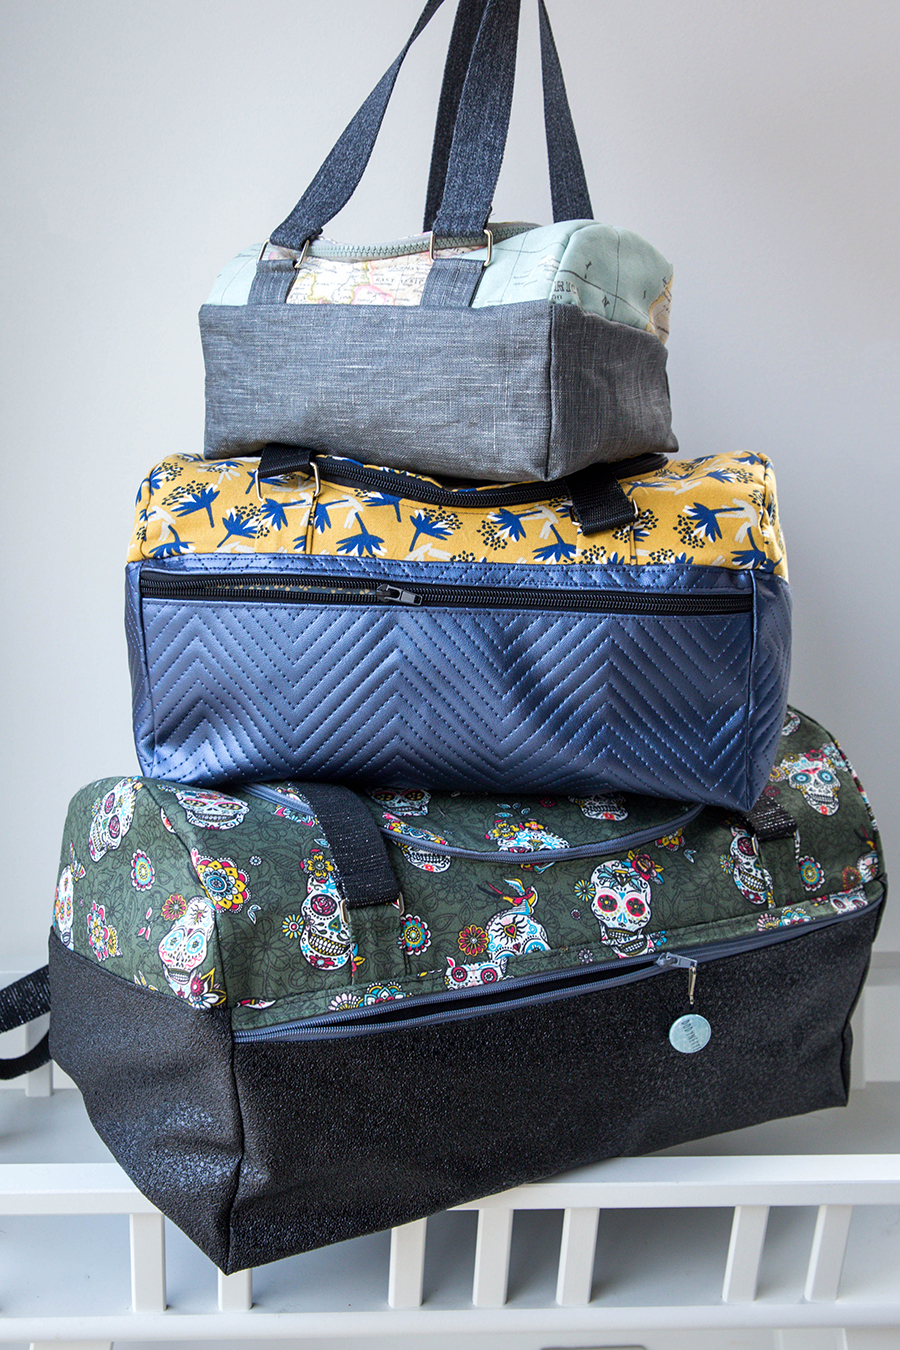 Le kit de couture sac Hugo (tailles 1 et 2) - Fleurs envolées jaunes et  prunes sur fond bleu ciel /fond de sac gris foncé - Dodynette